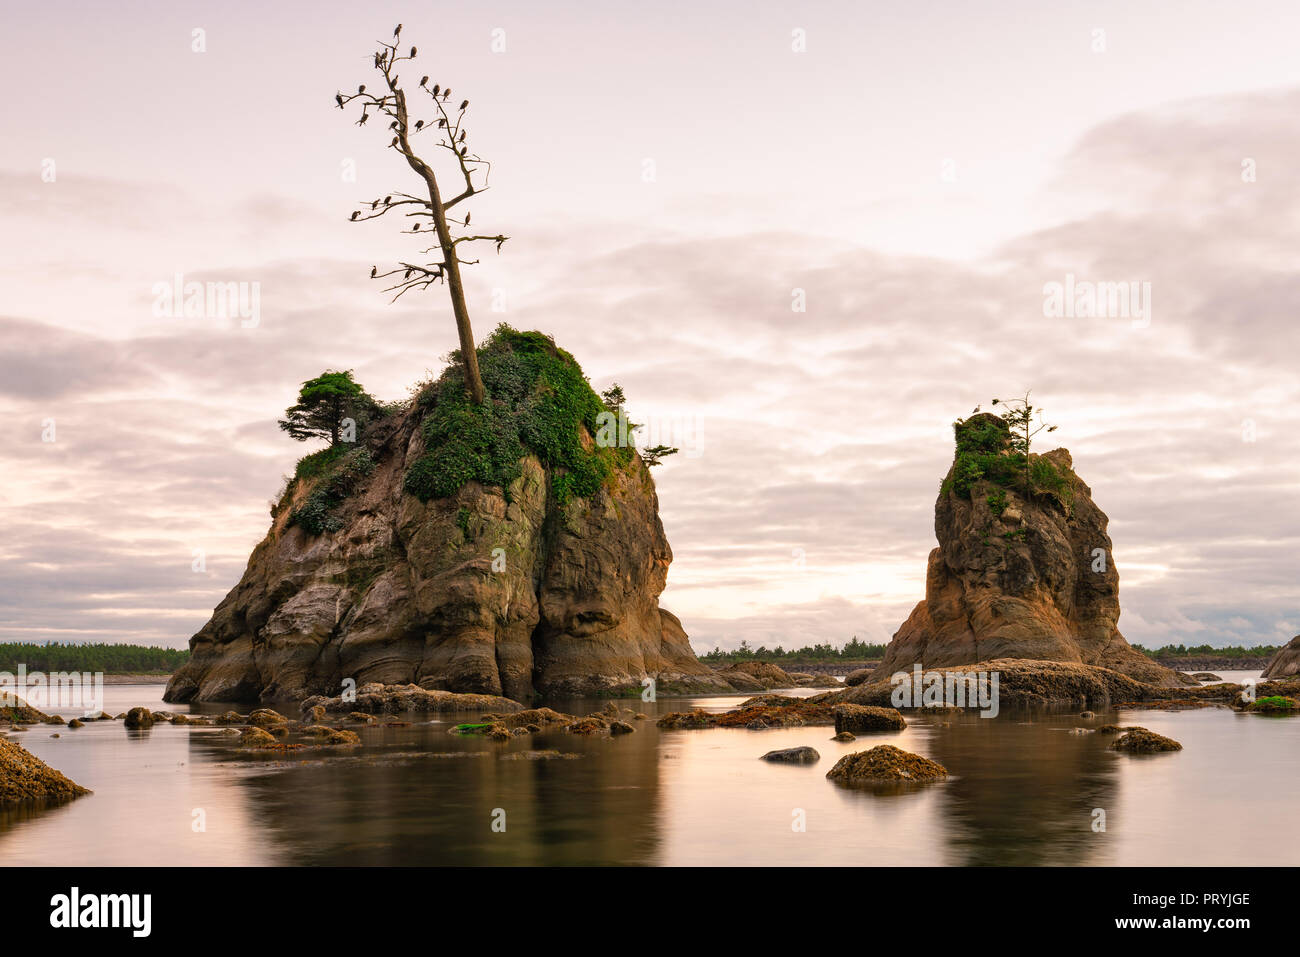 Rosa tramonto su Tillamook bay. Le formazioni rocciose stick al di fuori dell'oceano pacifico, con uccelli di mare annidata su di essi. Foto Stock